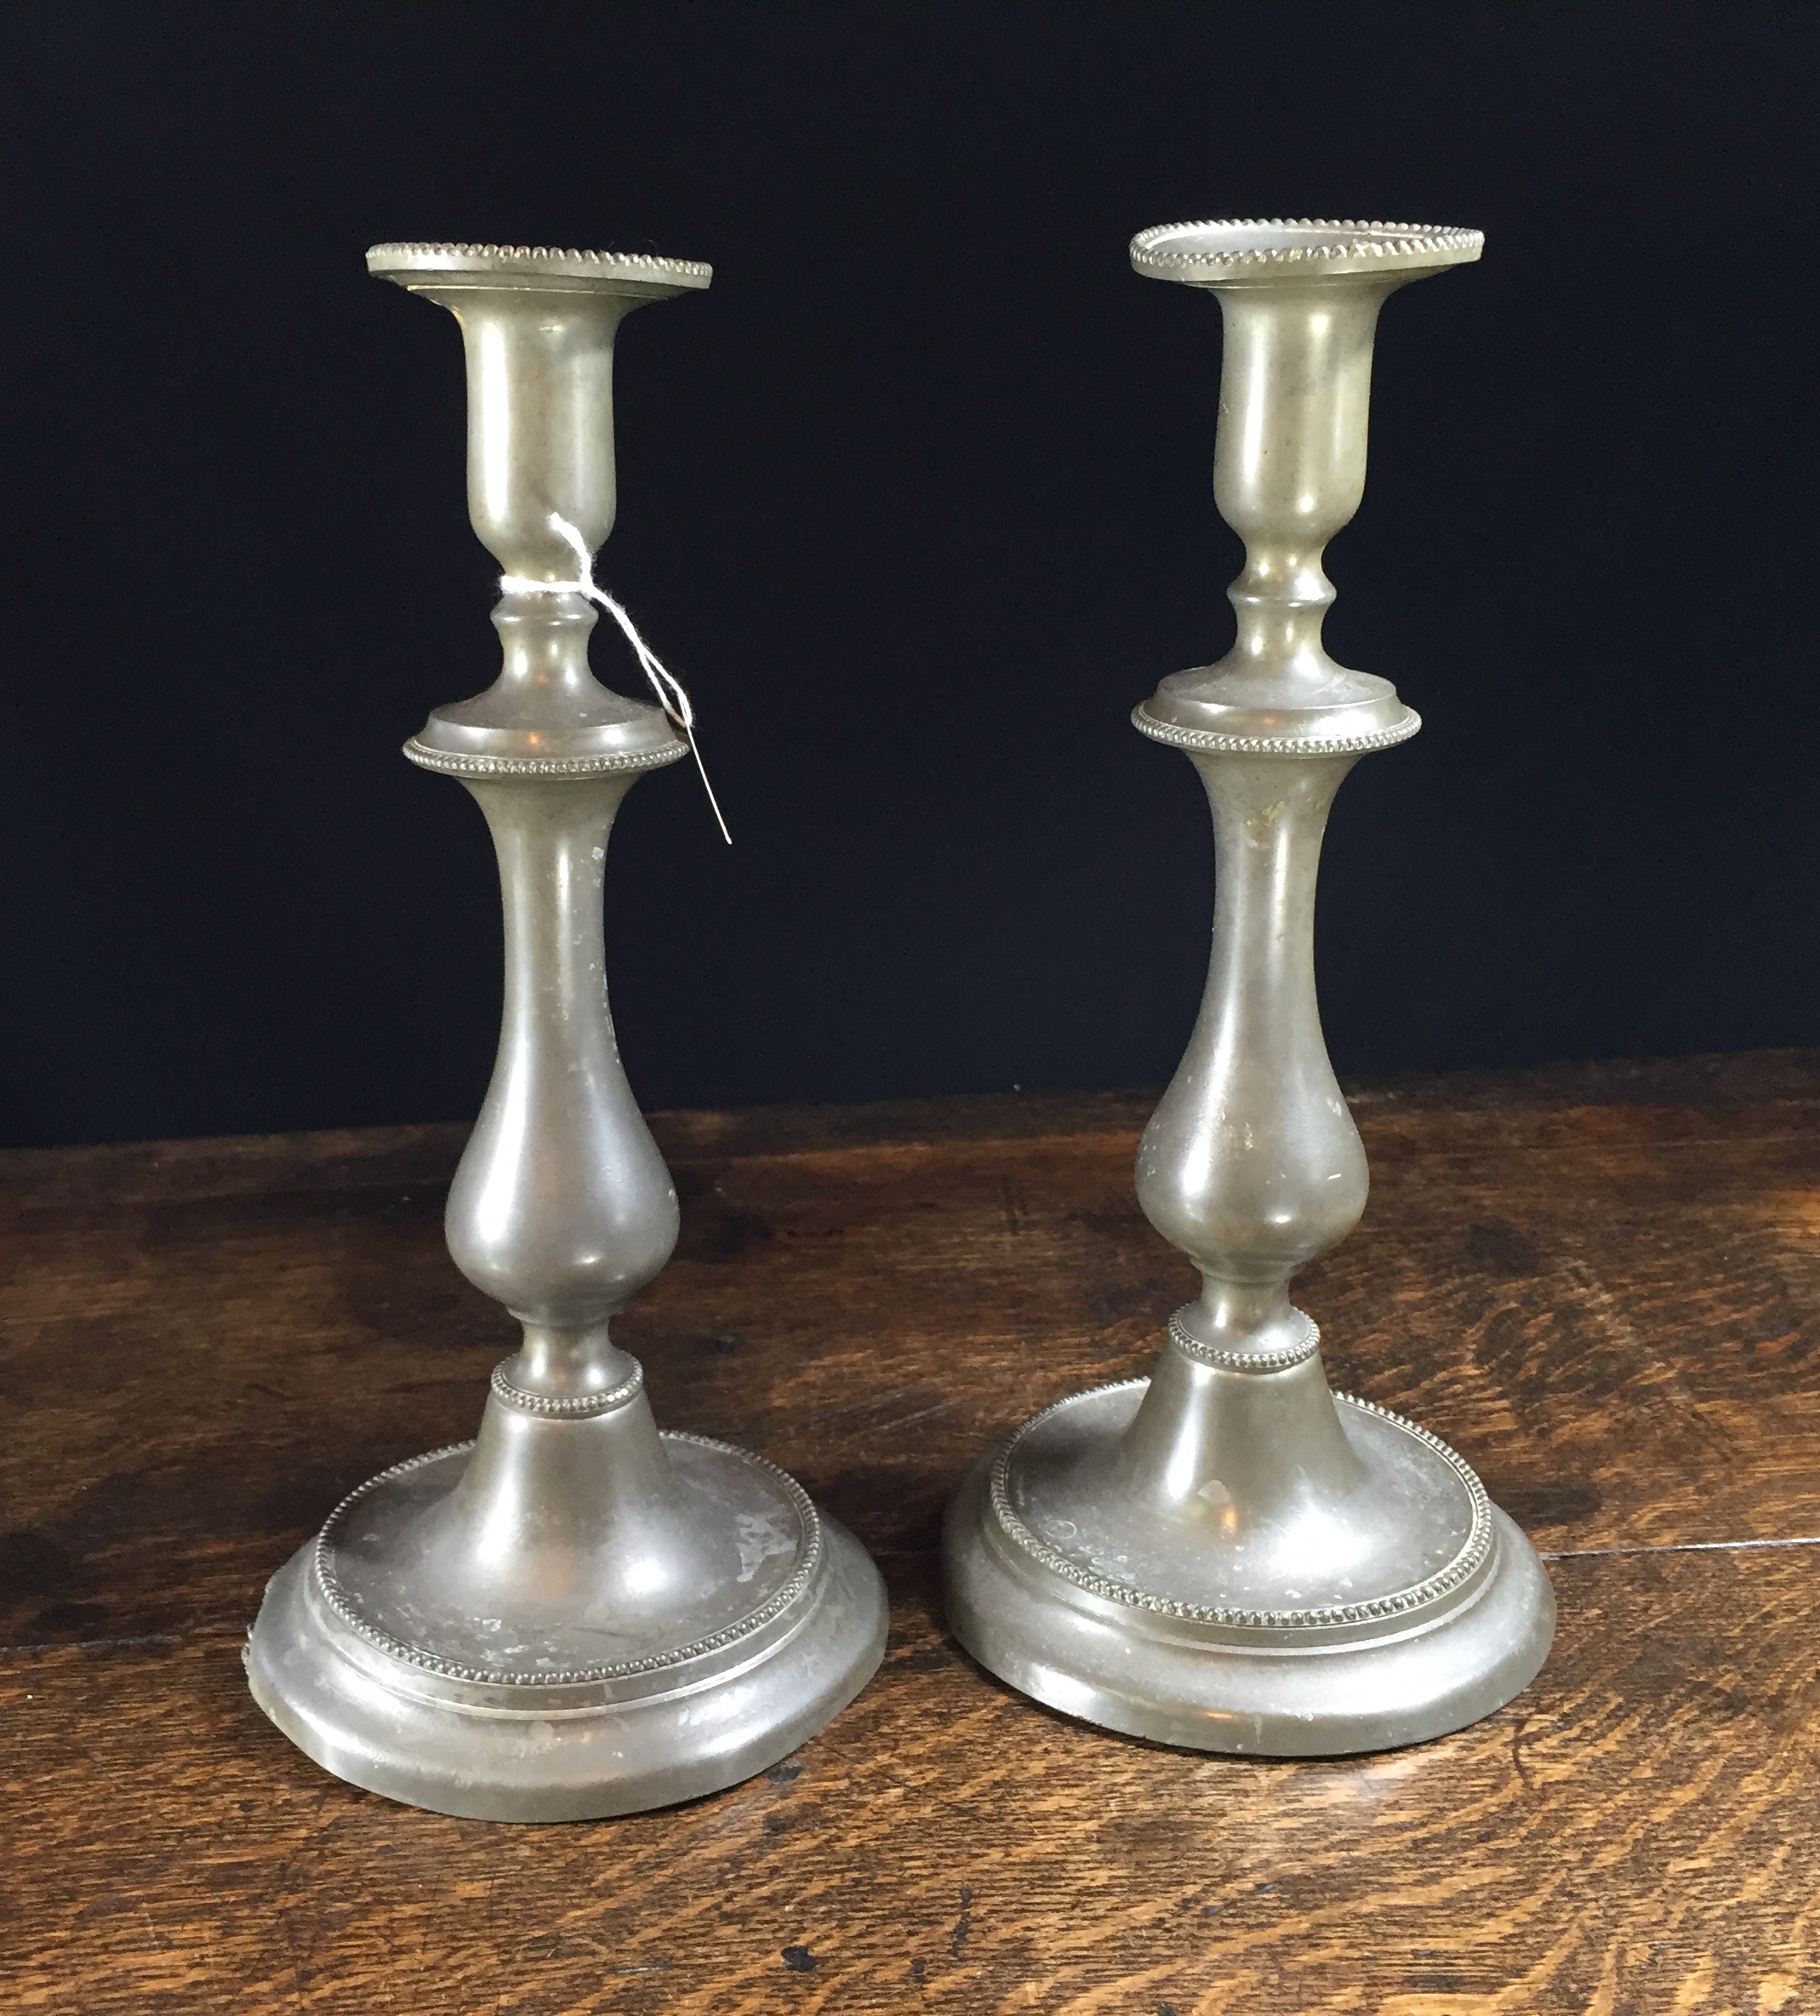 Pair of pewter candlesticks, circa 1830 